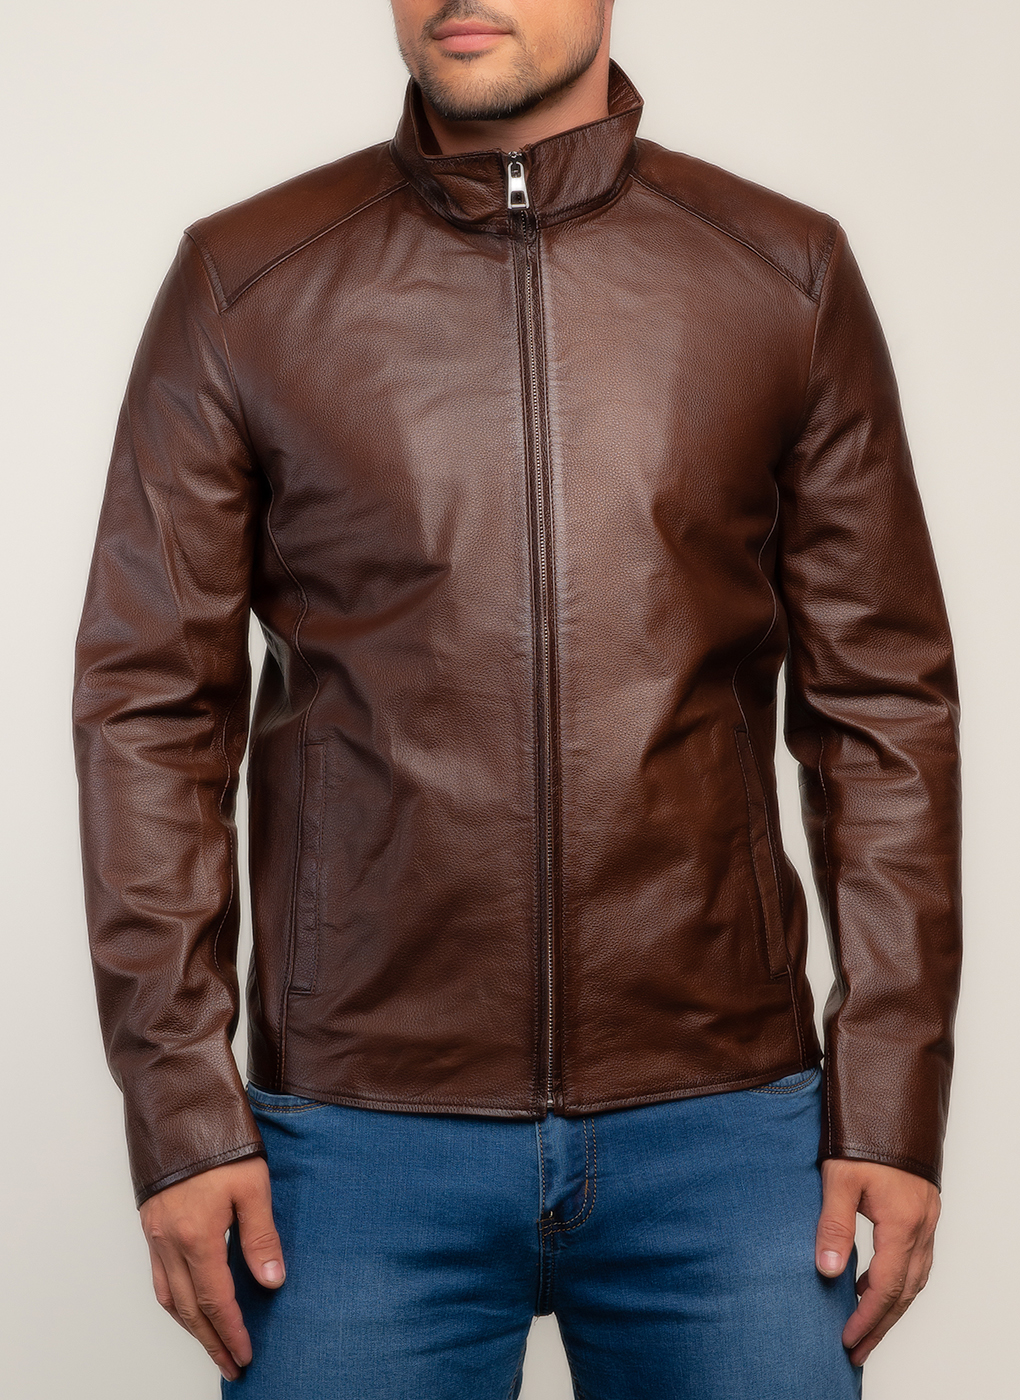 Кожаная куртка мужская Каляев 157548 коричневая 60